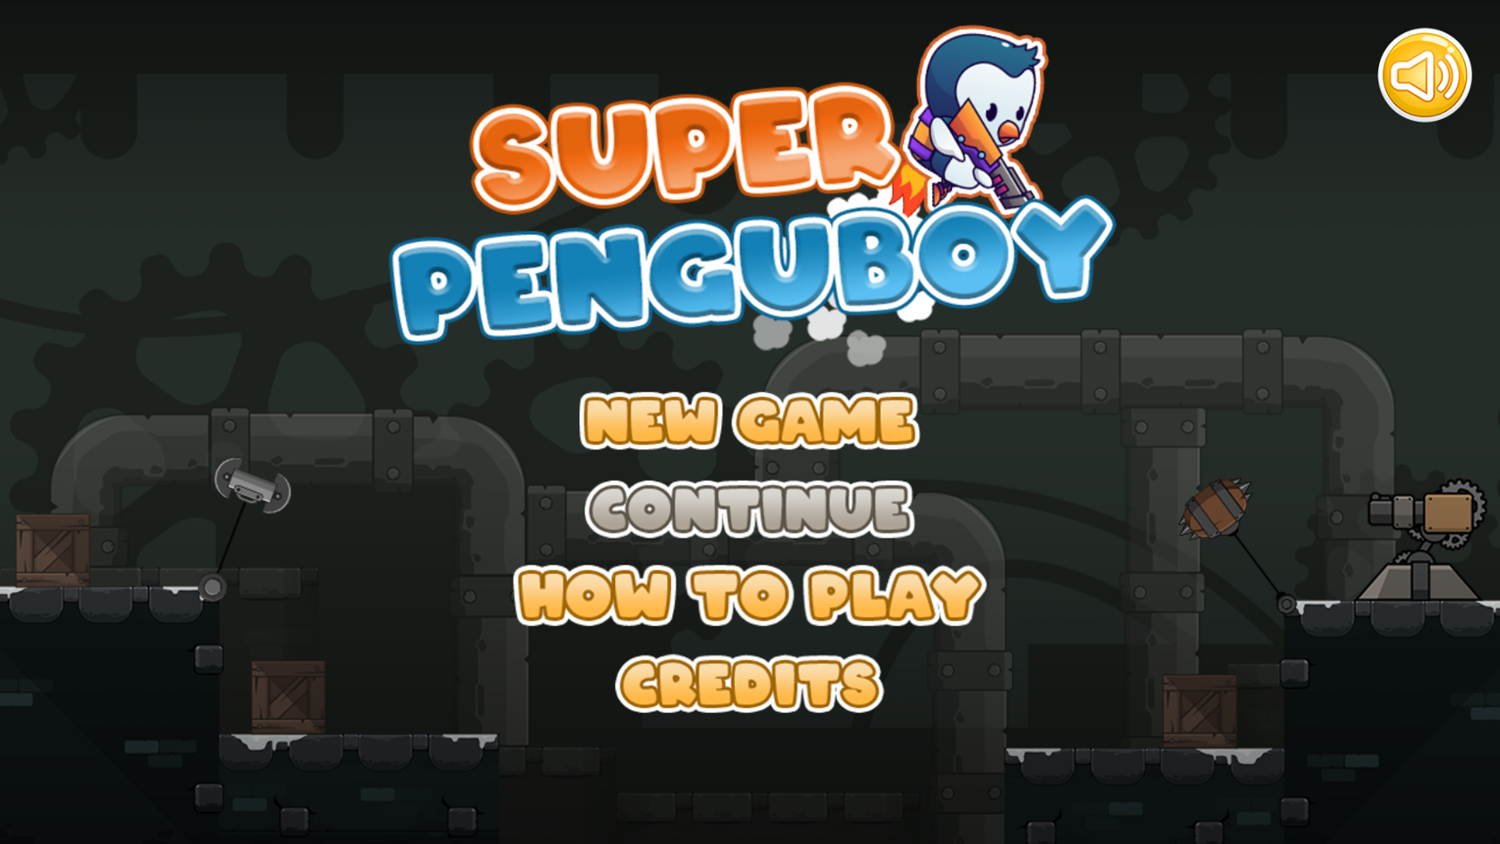 Super Penguboy Game Welcome Screen Screenshot.